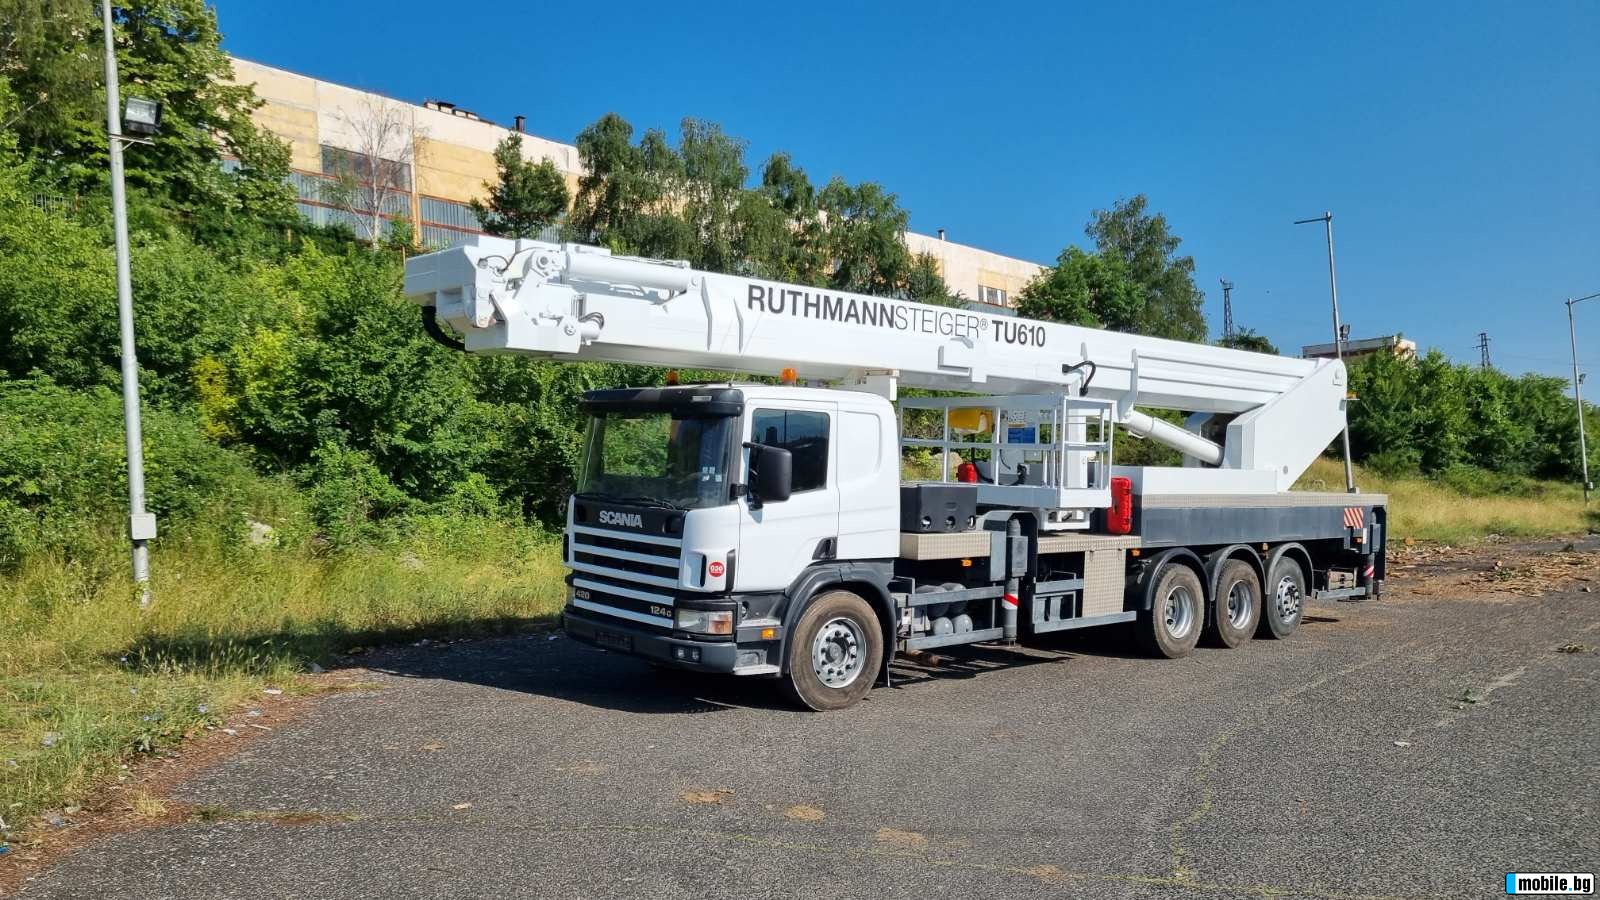  Ruthmann TU 610 | Mobile.bg   2